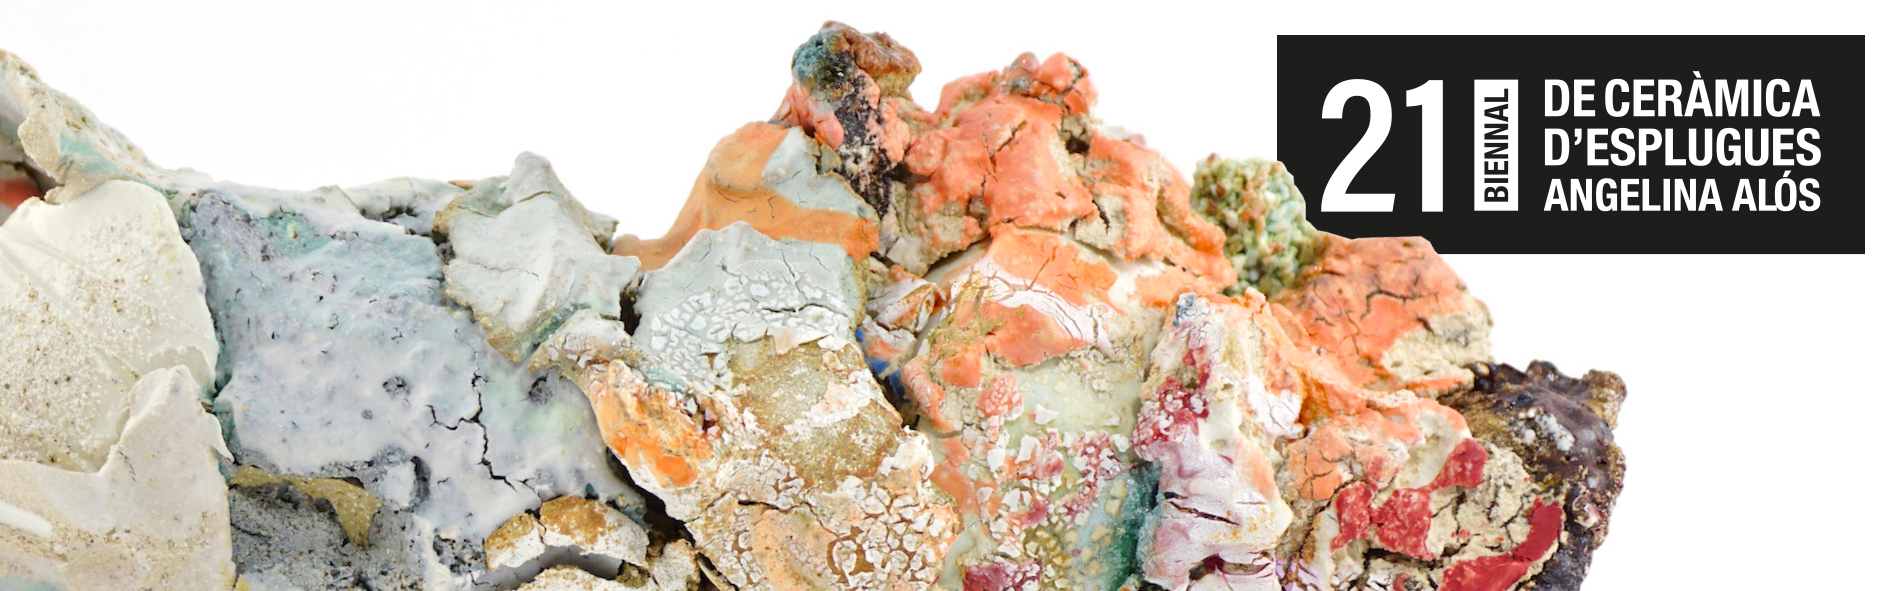 21 Biennal de ceràmica d’Esplugues Angelina Alós